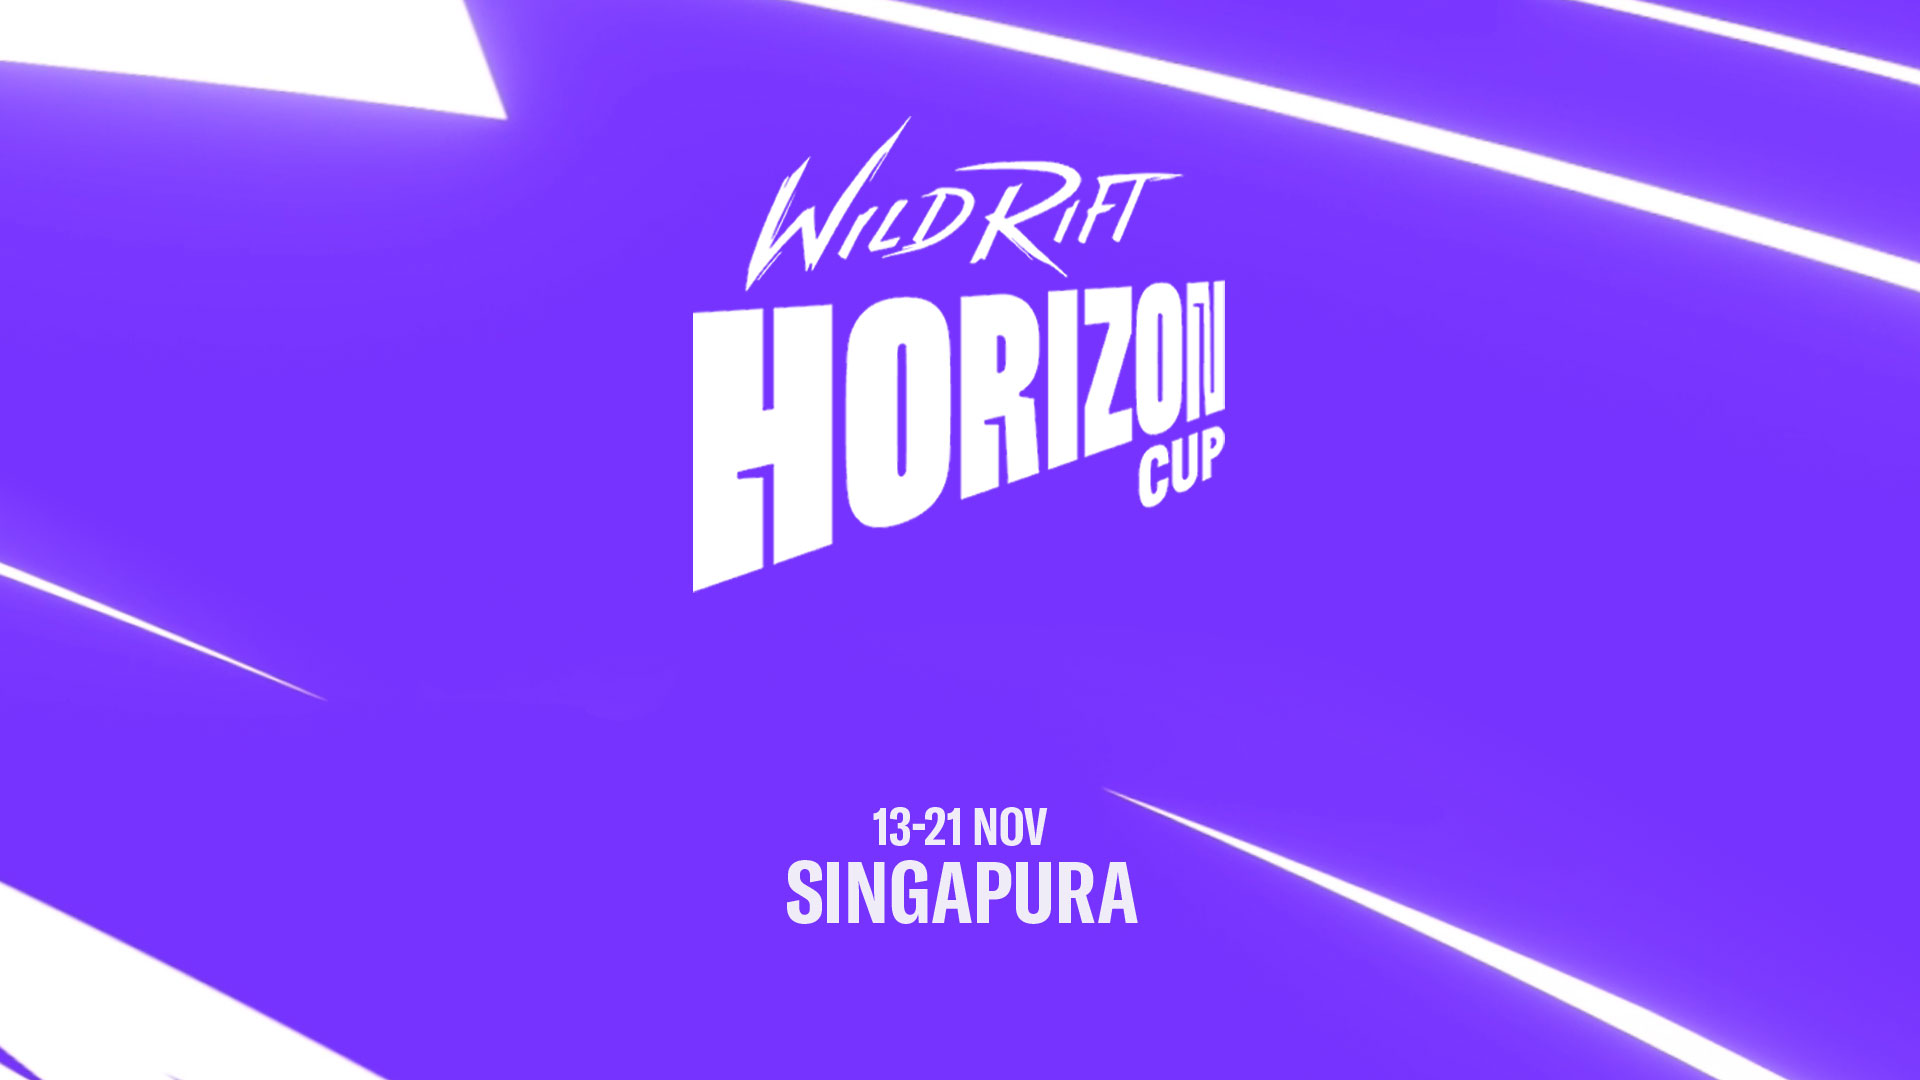 Memperkenalkan Wild Rift: Horizon Cup